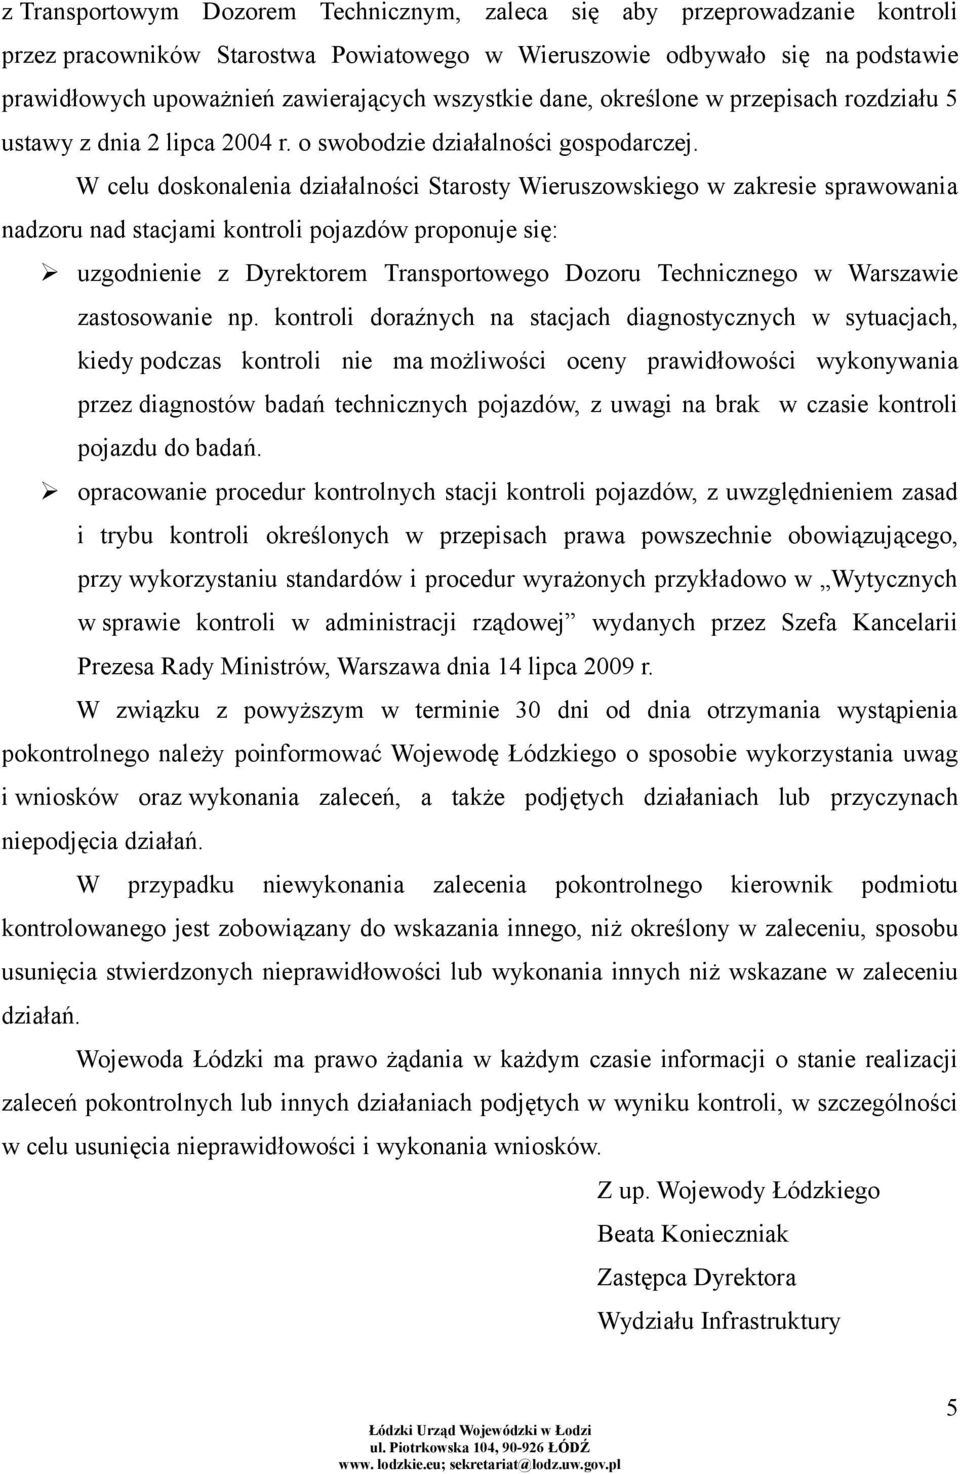 W celu doskonalenia działalności Starosty Wieruszowskiego w zakresie sprawowania nadzoru nad stacjami kontroli pojazdów proponuje się: uzgodnienie z Dyrektorem Transportowego Dozoru Technicznego w